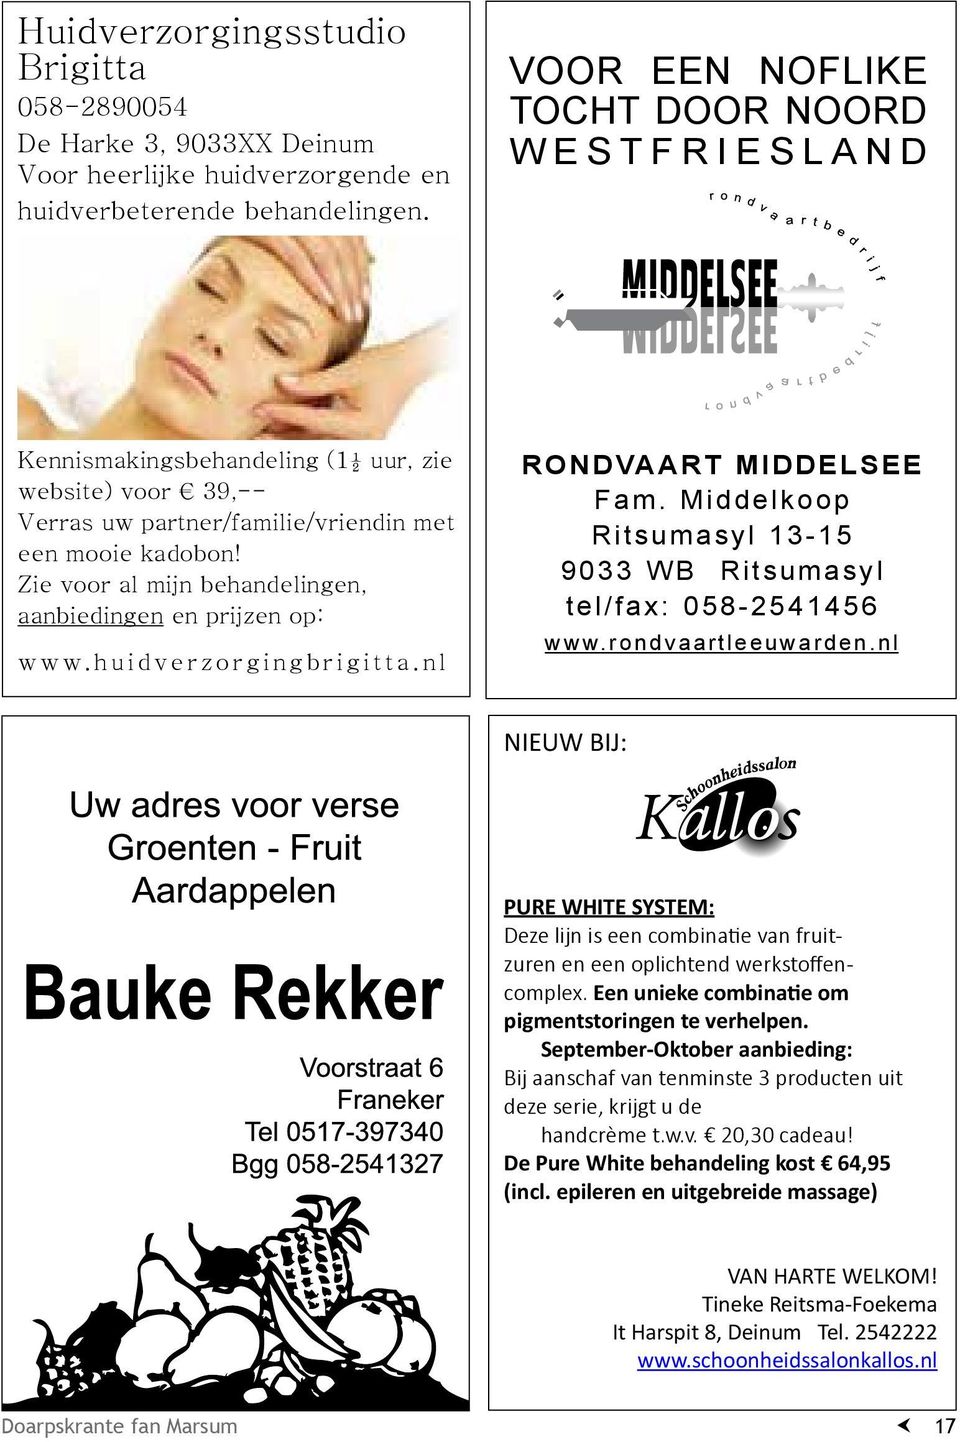 Zie voor al mijn behandelingen, aanbiedingen en prijzen op: www.huidverzorgingbrigitta.nl RONDVAART MIDDELSEE Fam. Middelkoop Ritsumasyl 13-15 9033 WB Ritsumasyl tel/fax: 058-2541456 www.